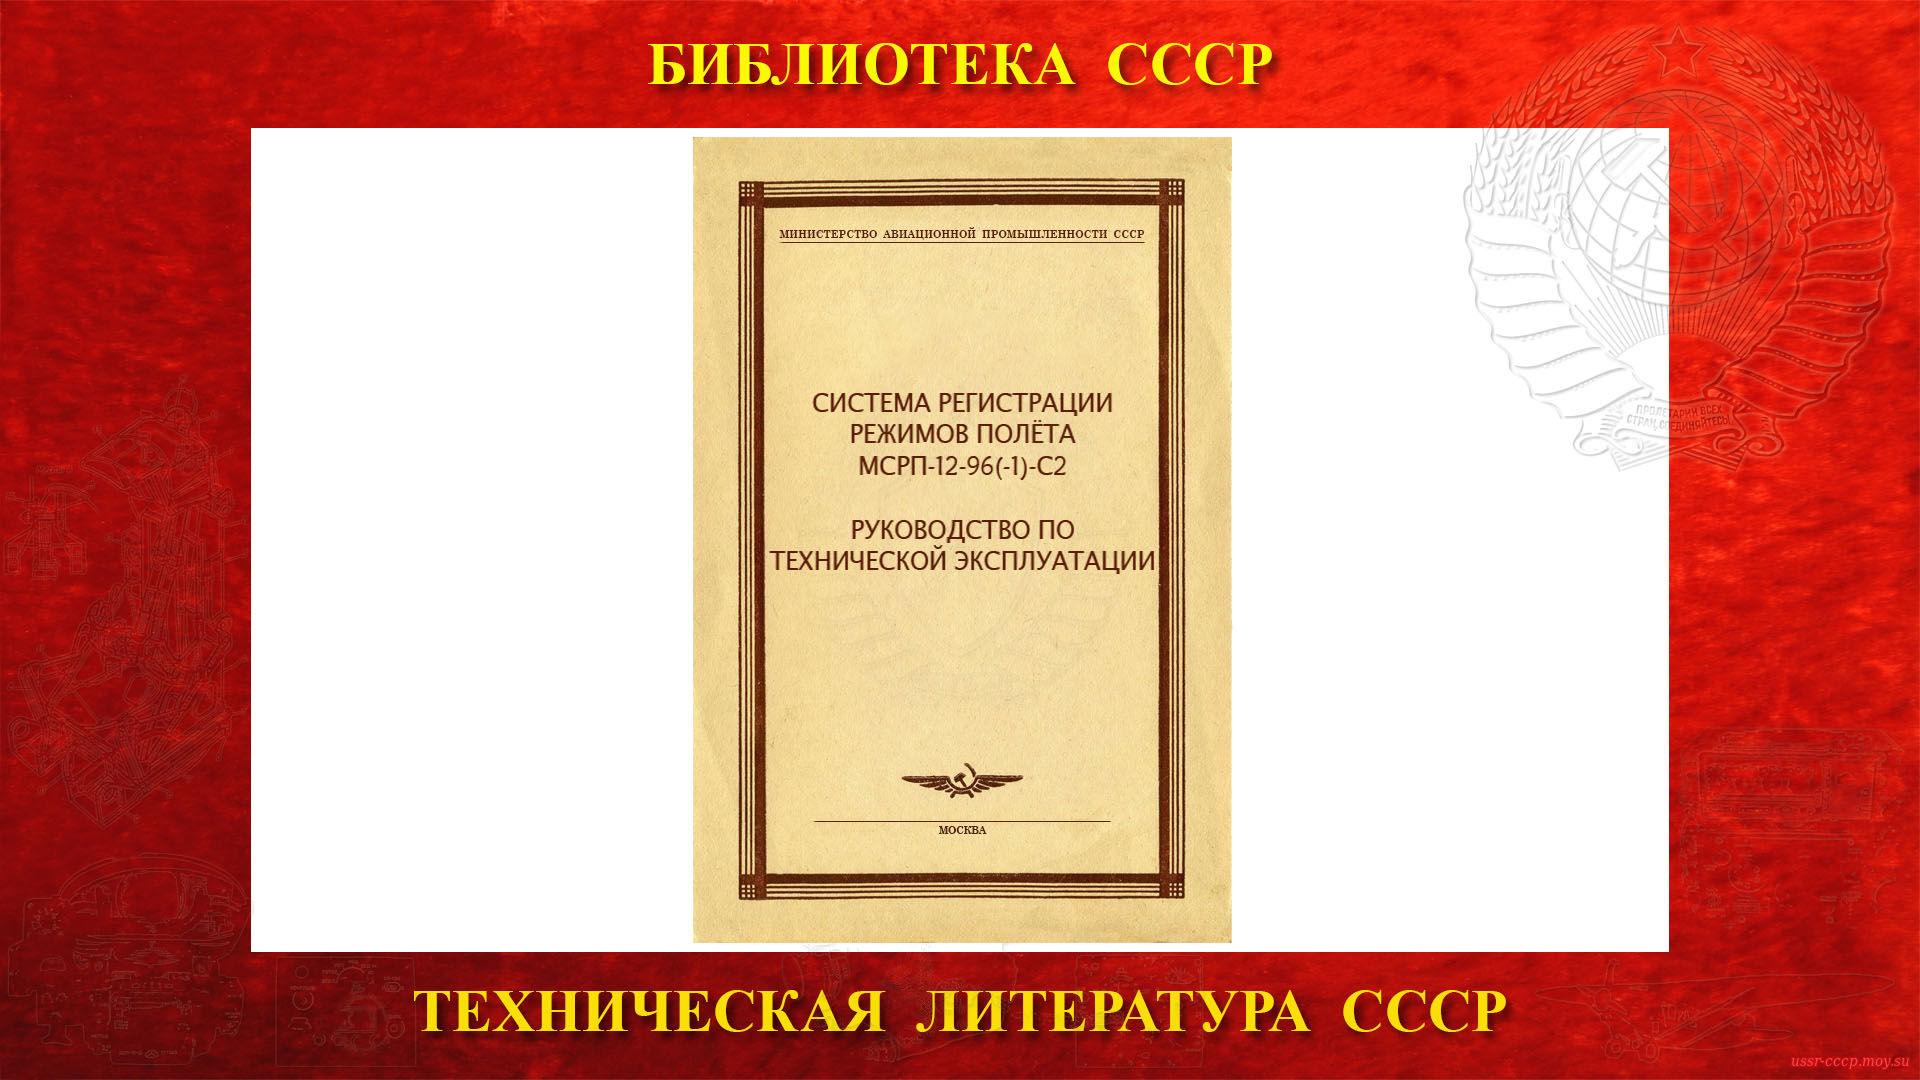 Система регистрации режимов полёта МСРП-12-96(-1)-С2 — Библиотека СССР